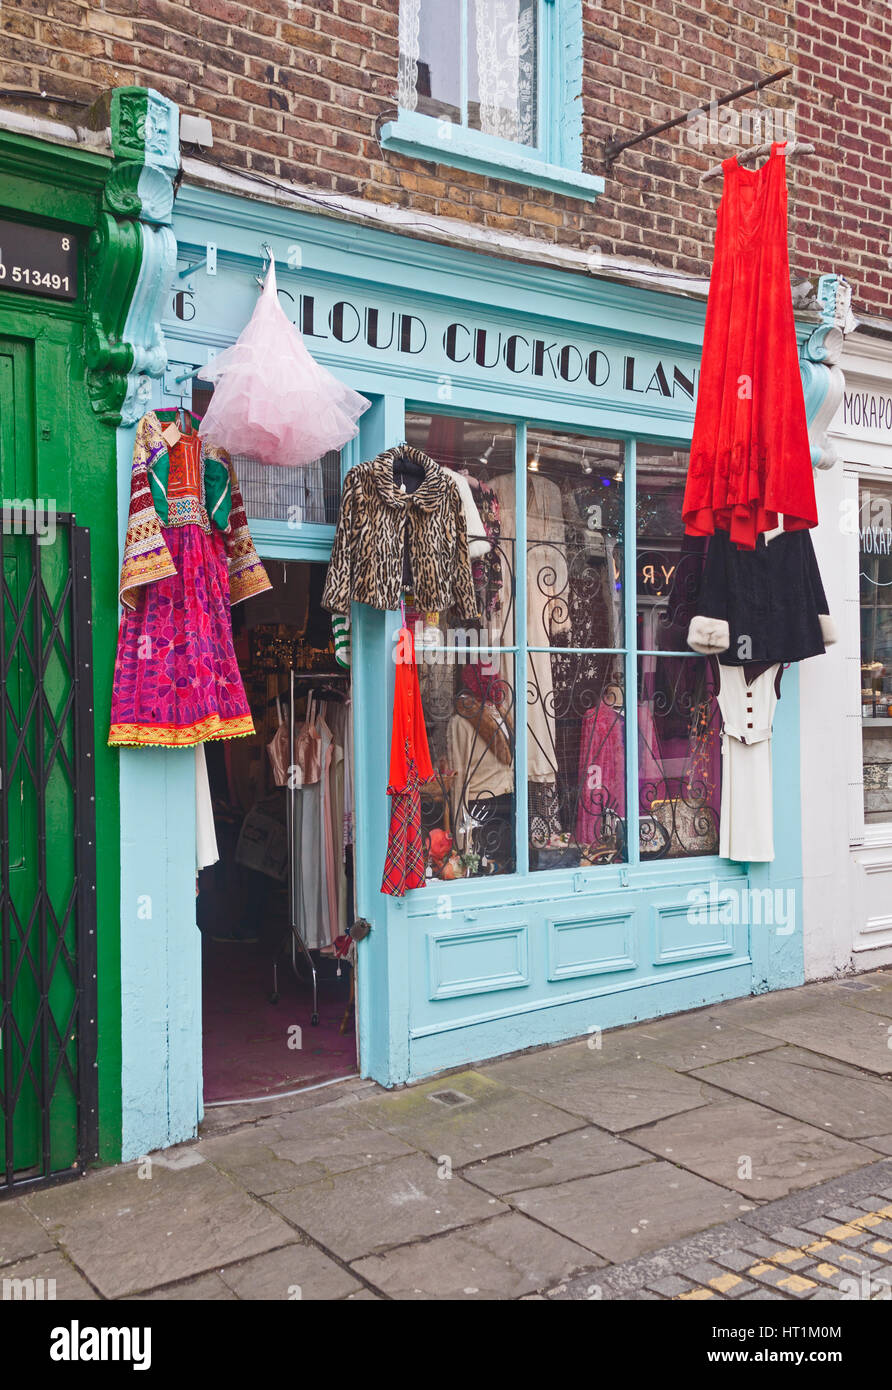 inicial salchicha Irradiar Londres, Islington 'nube tierra Cuco' - una mujer tienda de ropa de moda  vintage en Charlton, fuera de Camden Passage Fotografía de stock - Alamy